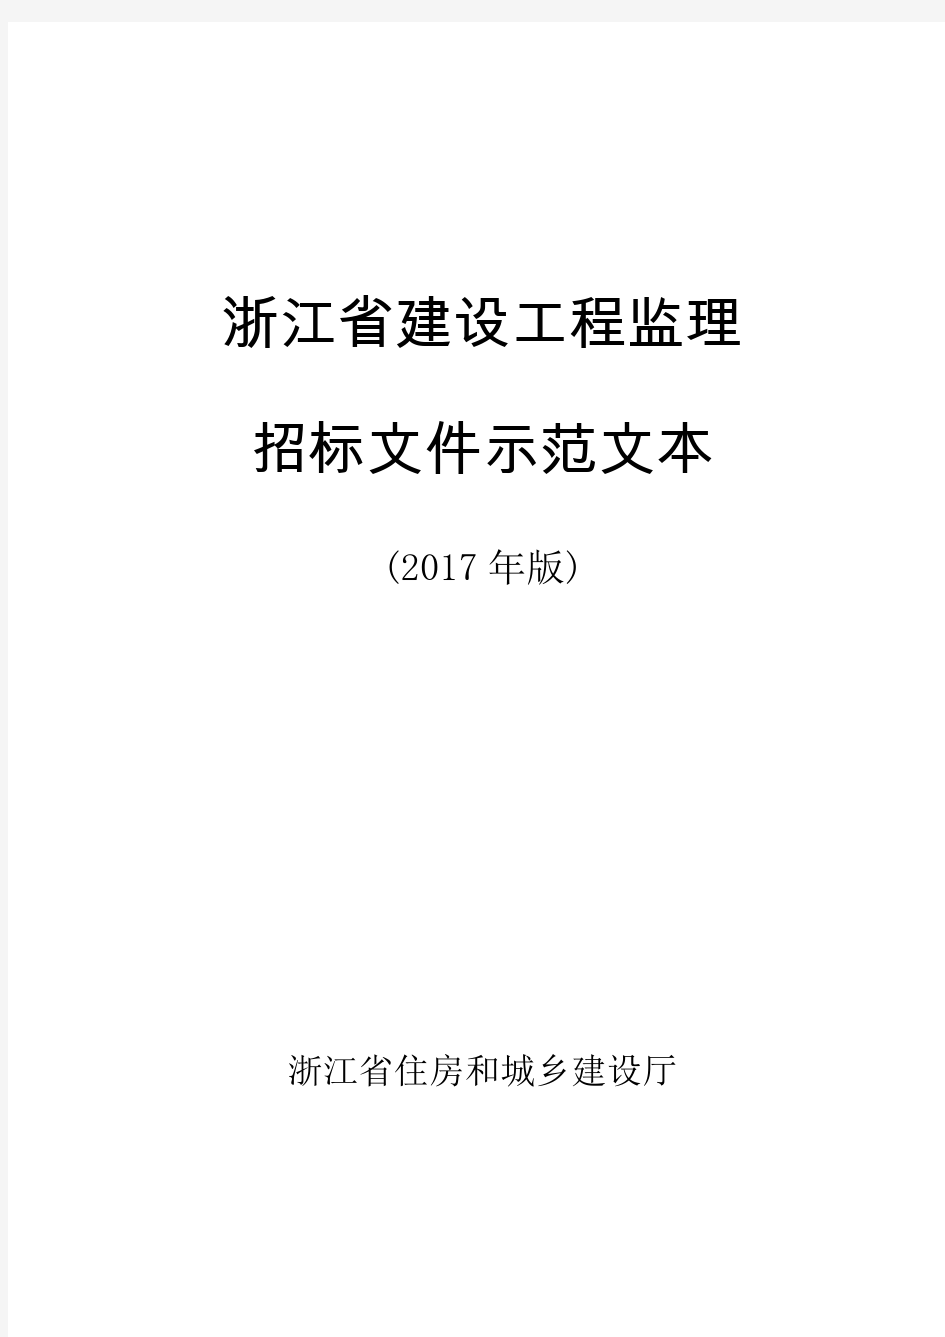 《浙江省建设工程监理招标文件示范文本》(2017年版)